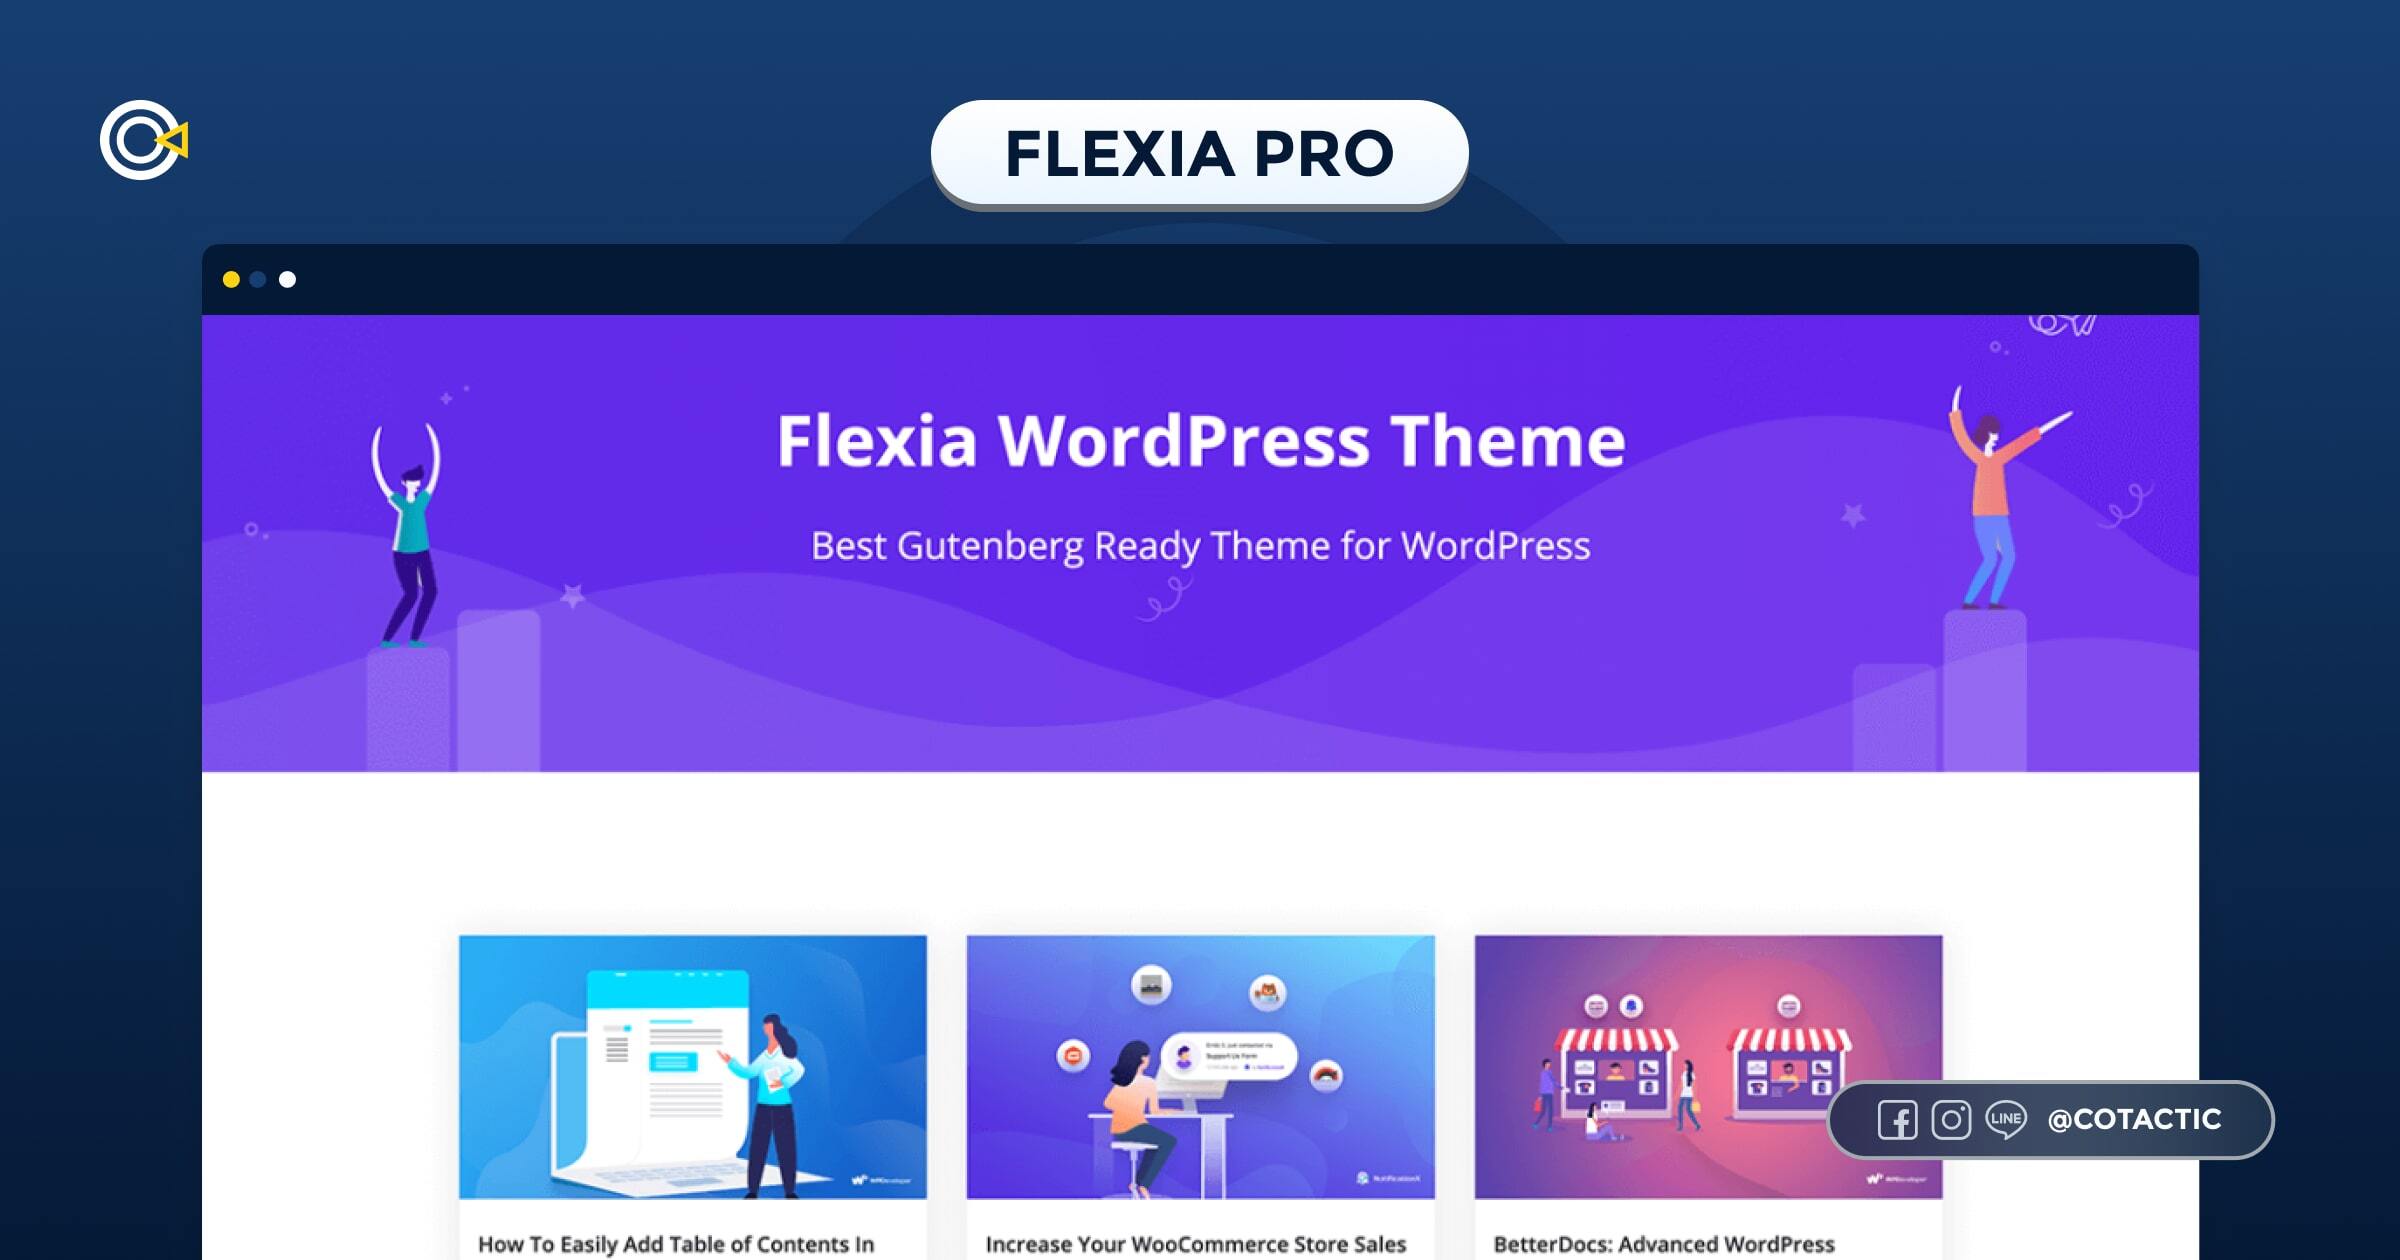  Flexia Pro